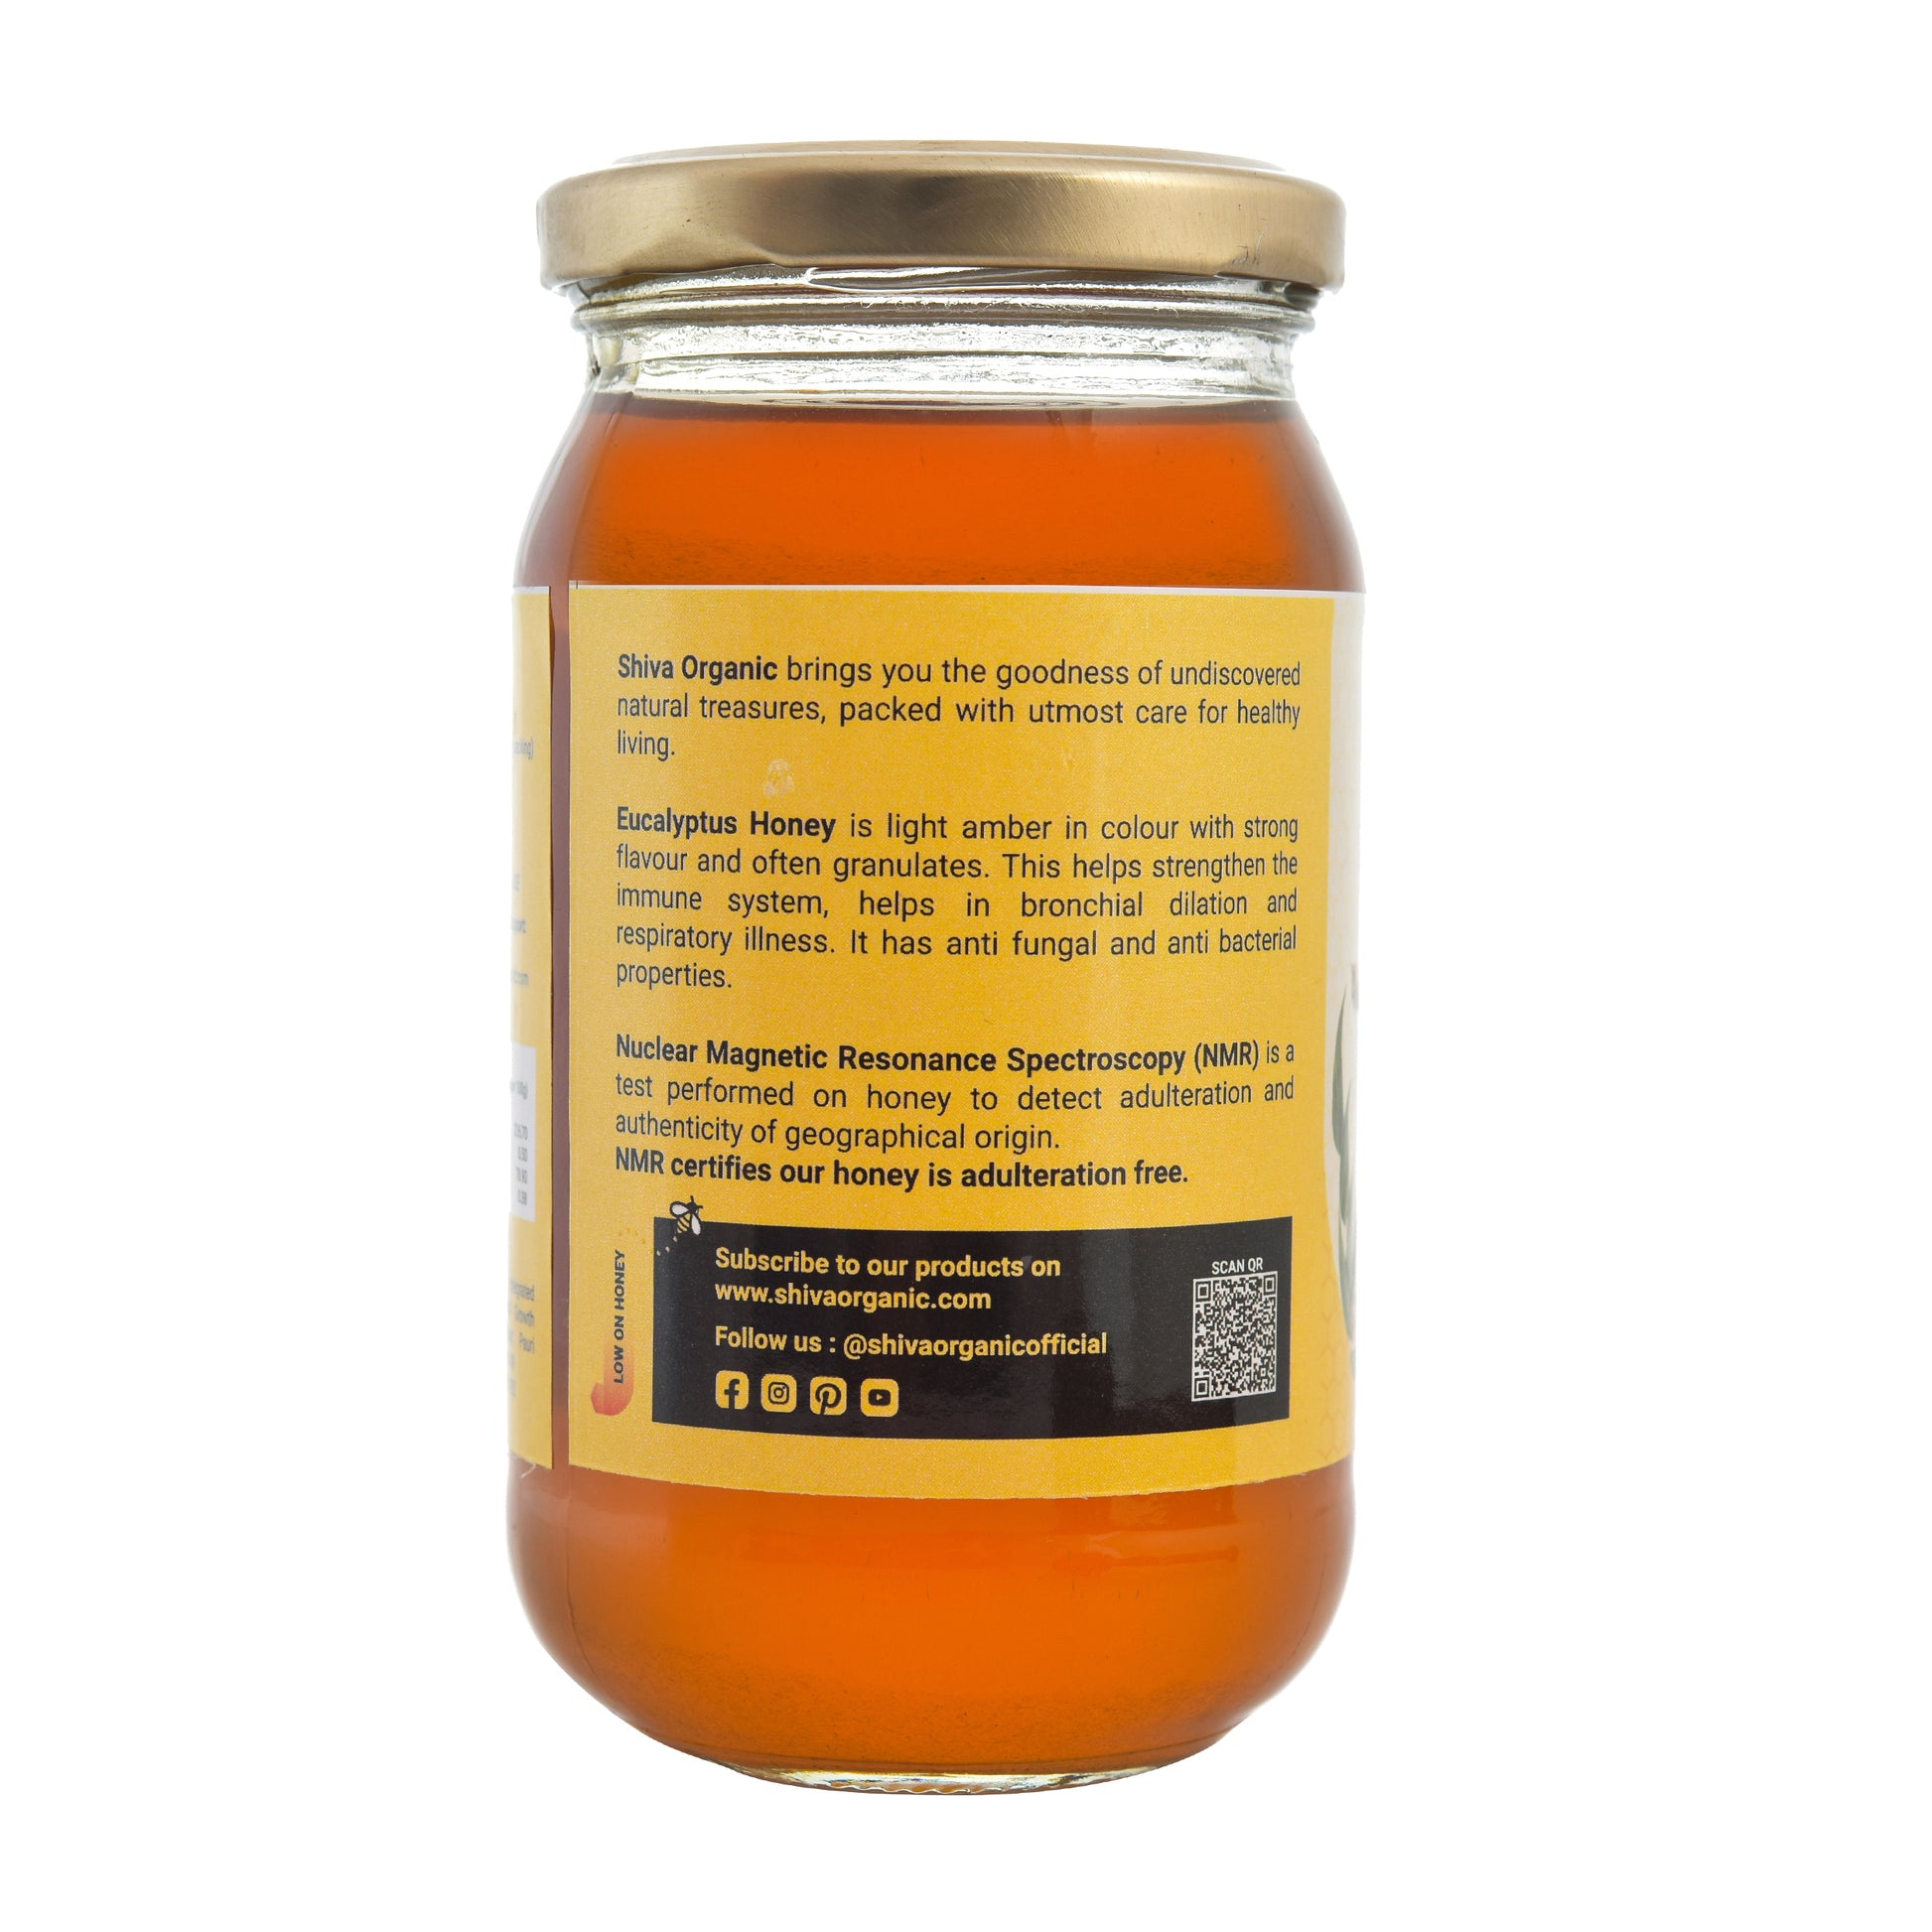 500 gm, Eucalyptus Honey